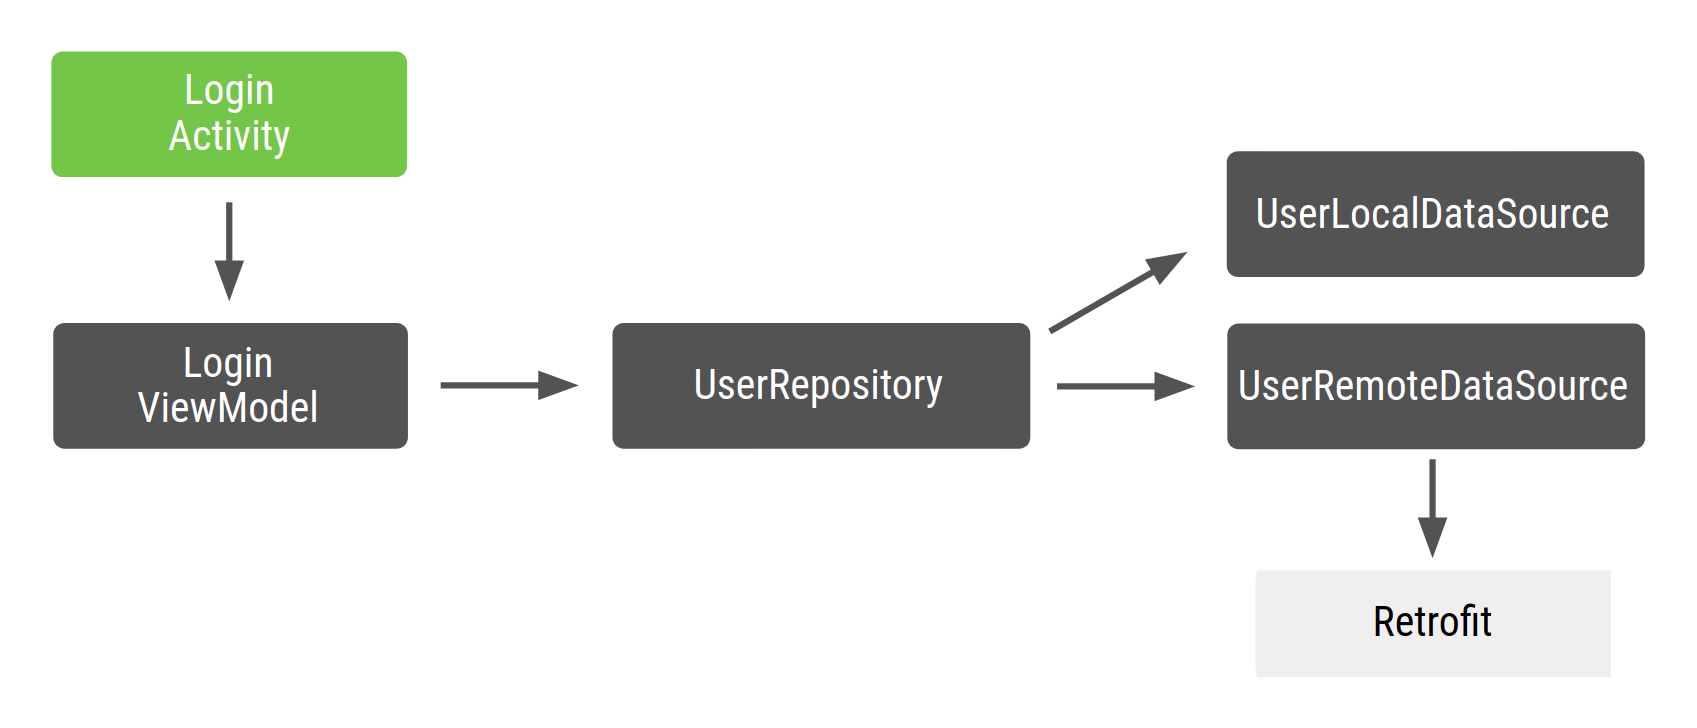 يعتمد نشاط تسجيل الدخول على LoginViewModel الذي يعتمد على UserRepository، الذي يعتمد على UserLocalDataSource وUserRemoteDataSource، اللذين
 يعتمدان بدورهما على Retrofit.